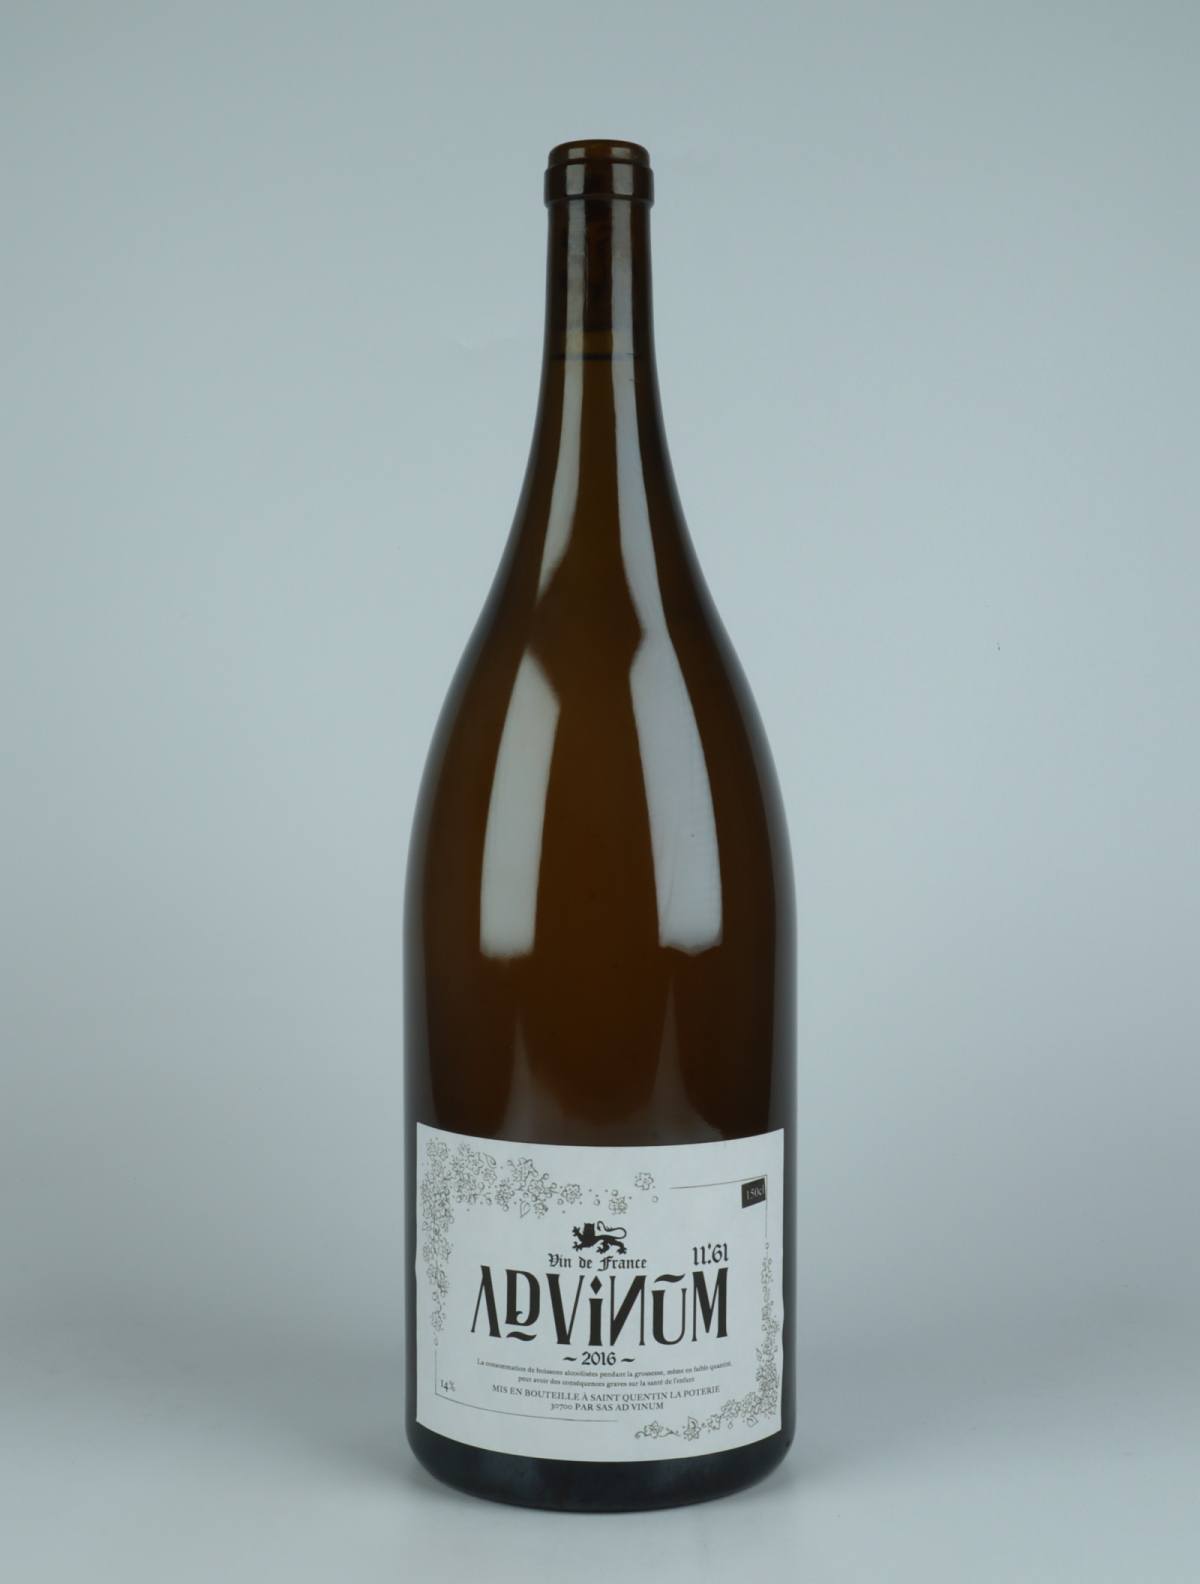 En flaske 2016 11.61 Blanc Hvidvin fra Ad Vinum, Gard i Frankrig